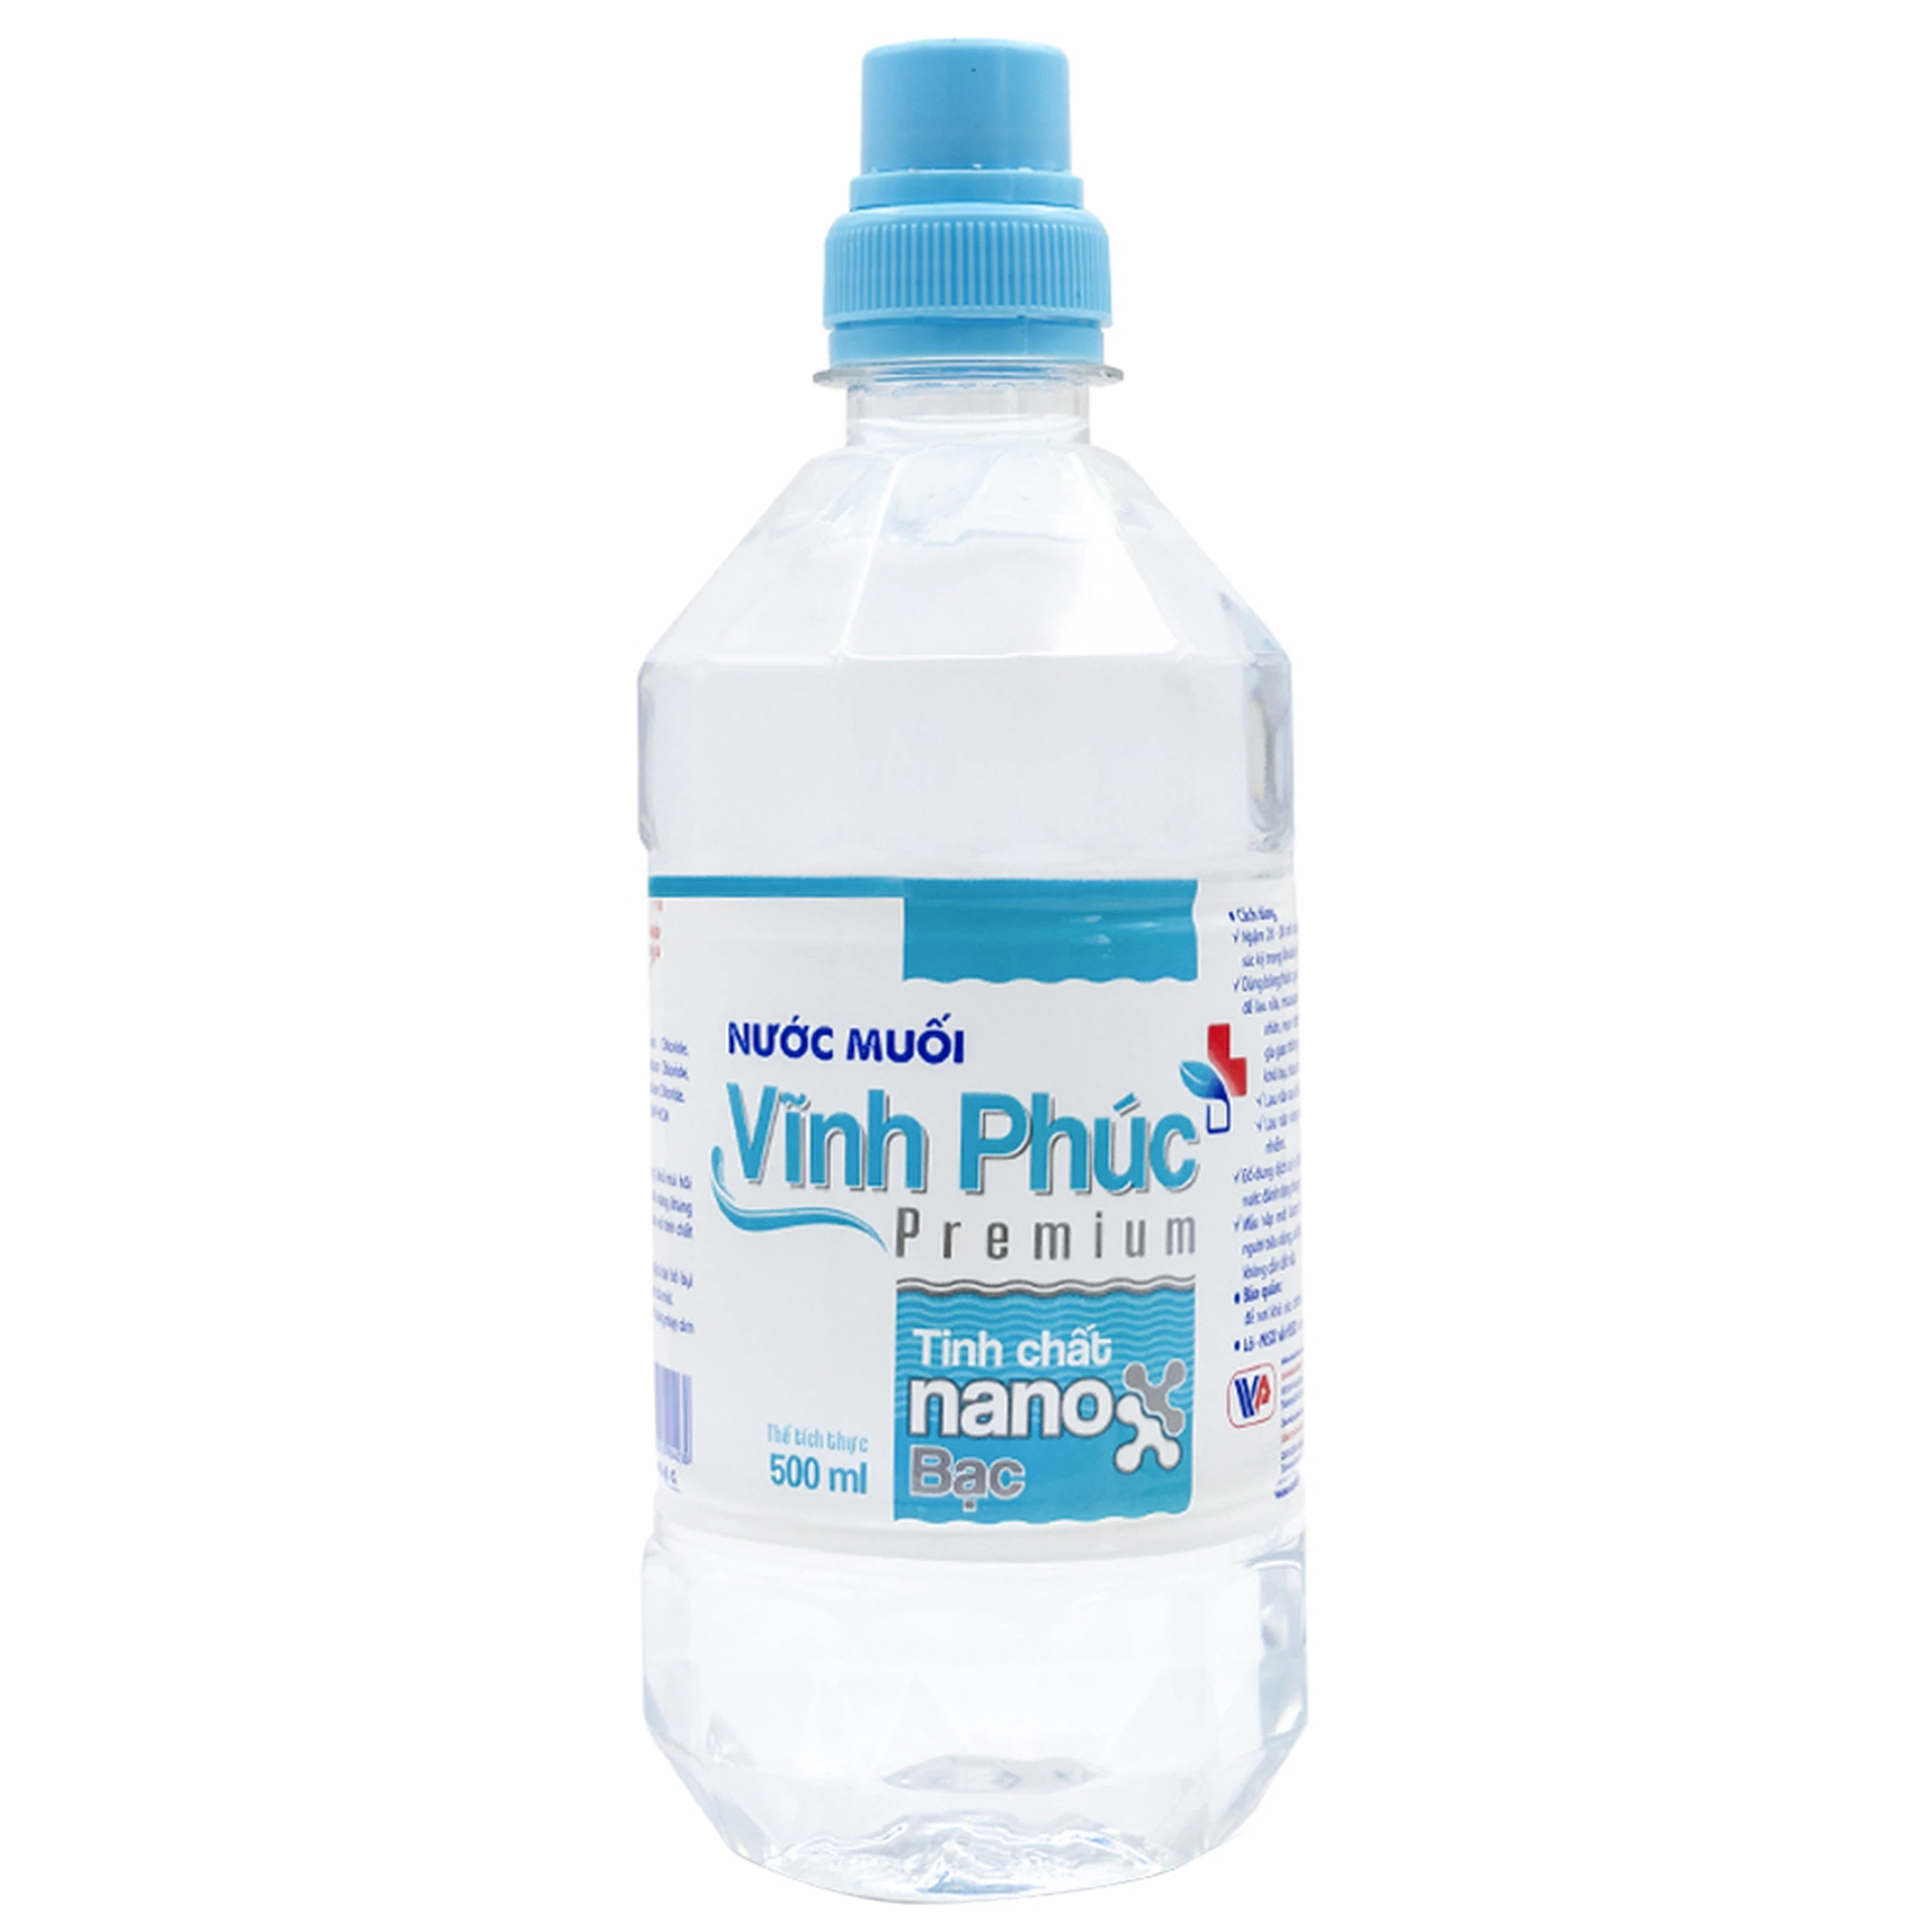 Nước muối Vĩnh Phúc Premium Tinh Chất Nano Bạc 500ml kháng khuẩn, nấm trong khoang miệng